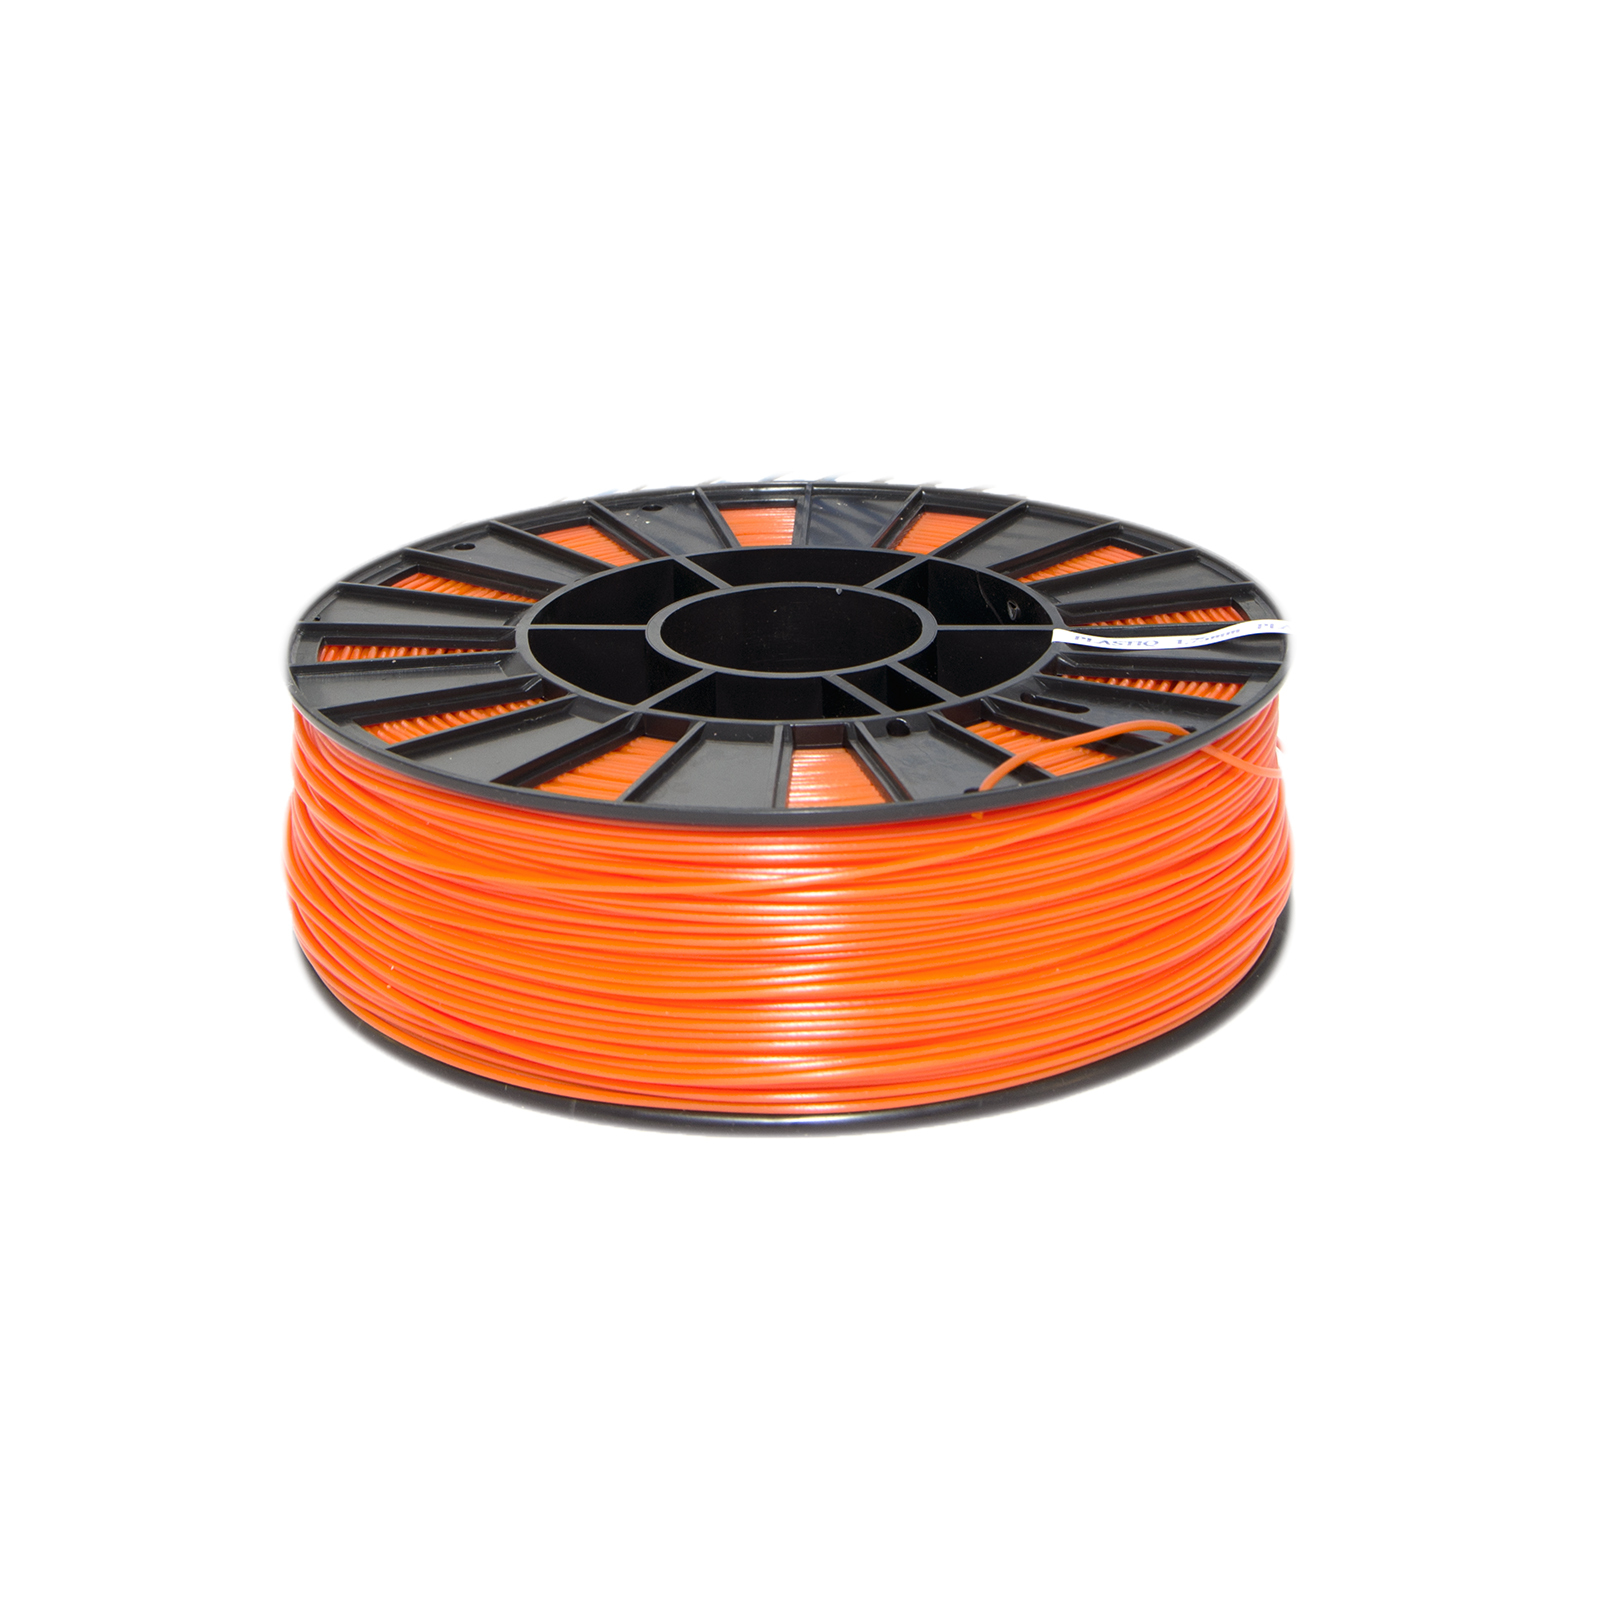 ПластикABSдля3Dпринтера1,75мм,300м,оранжевый